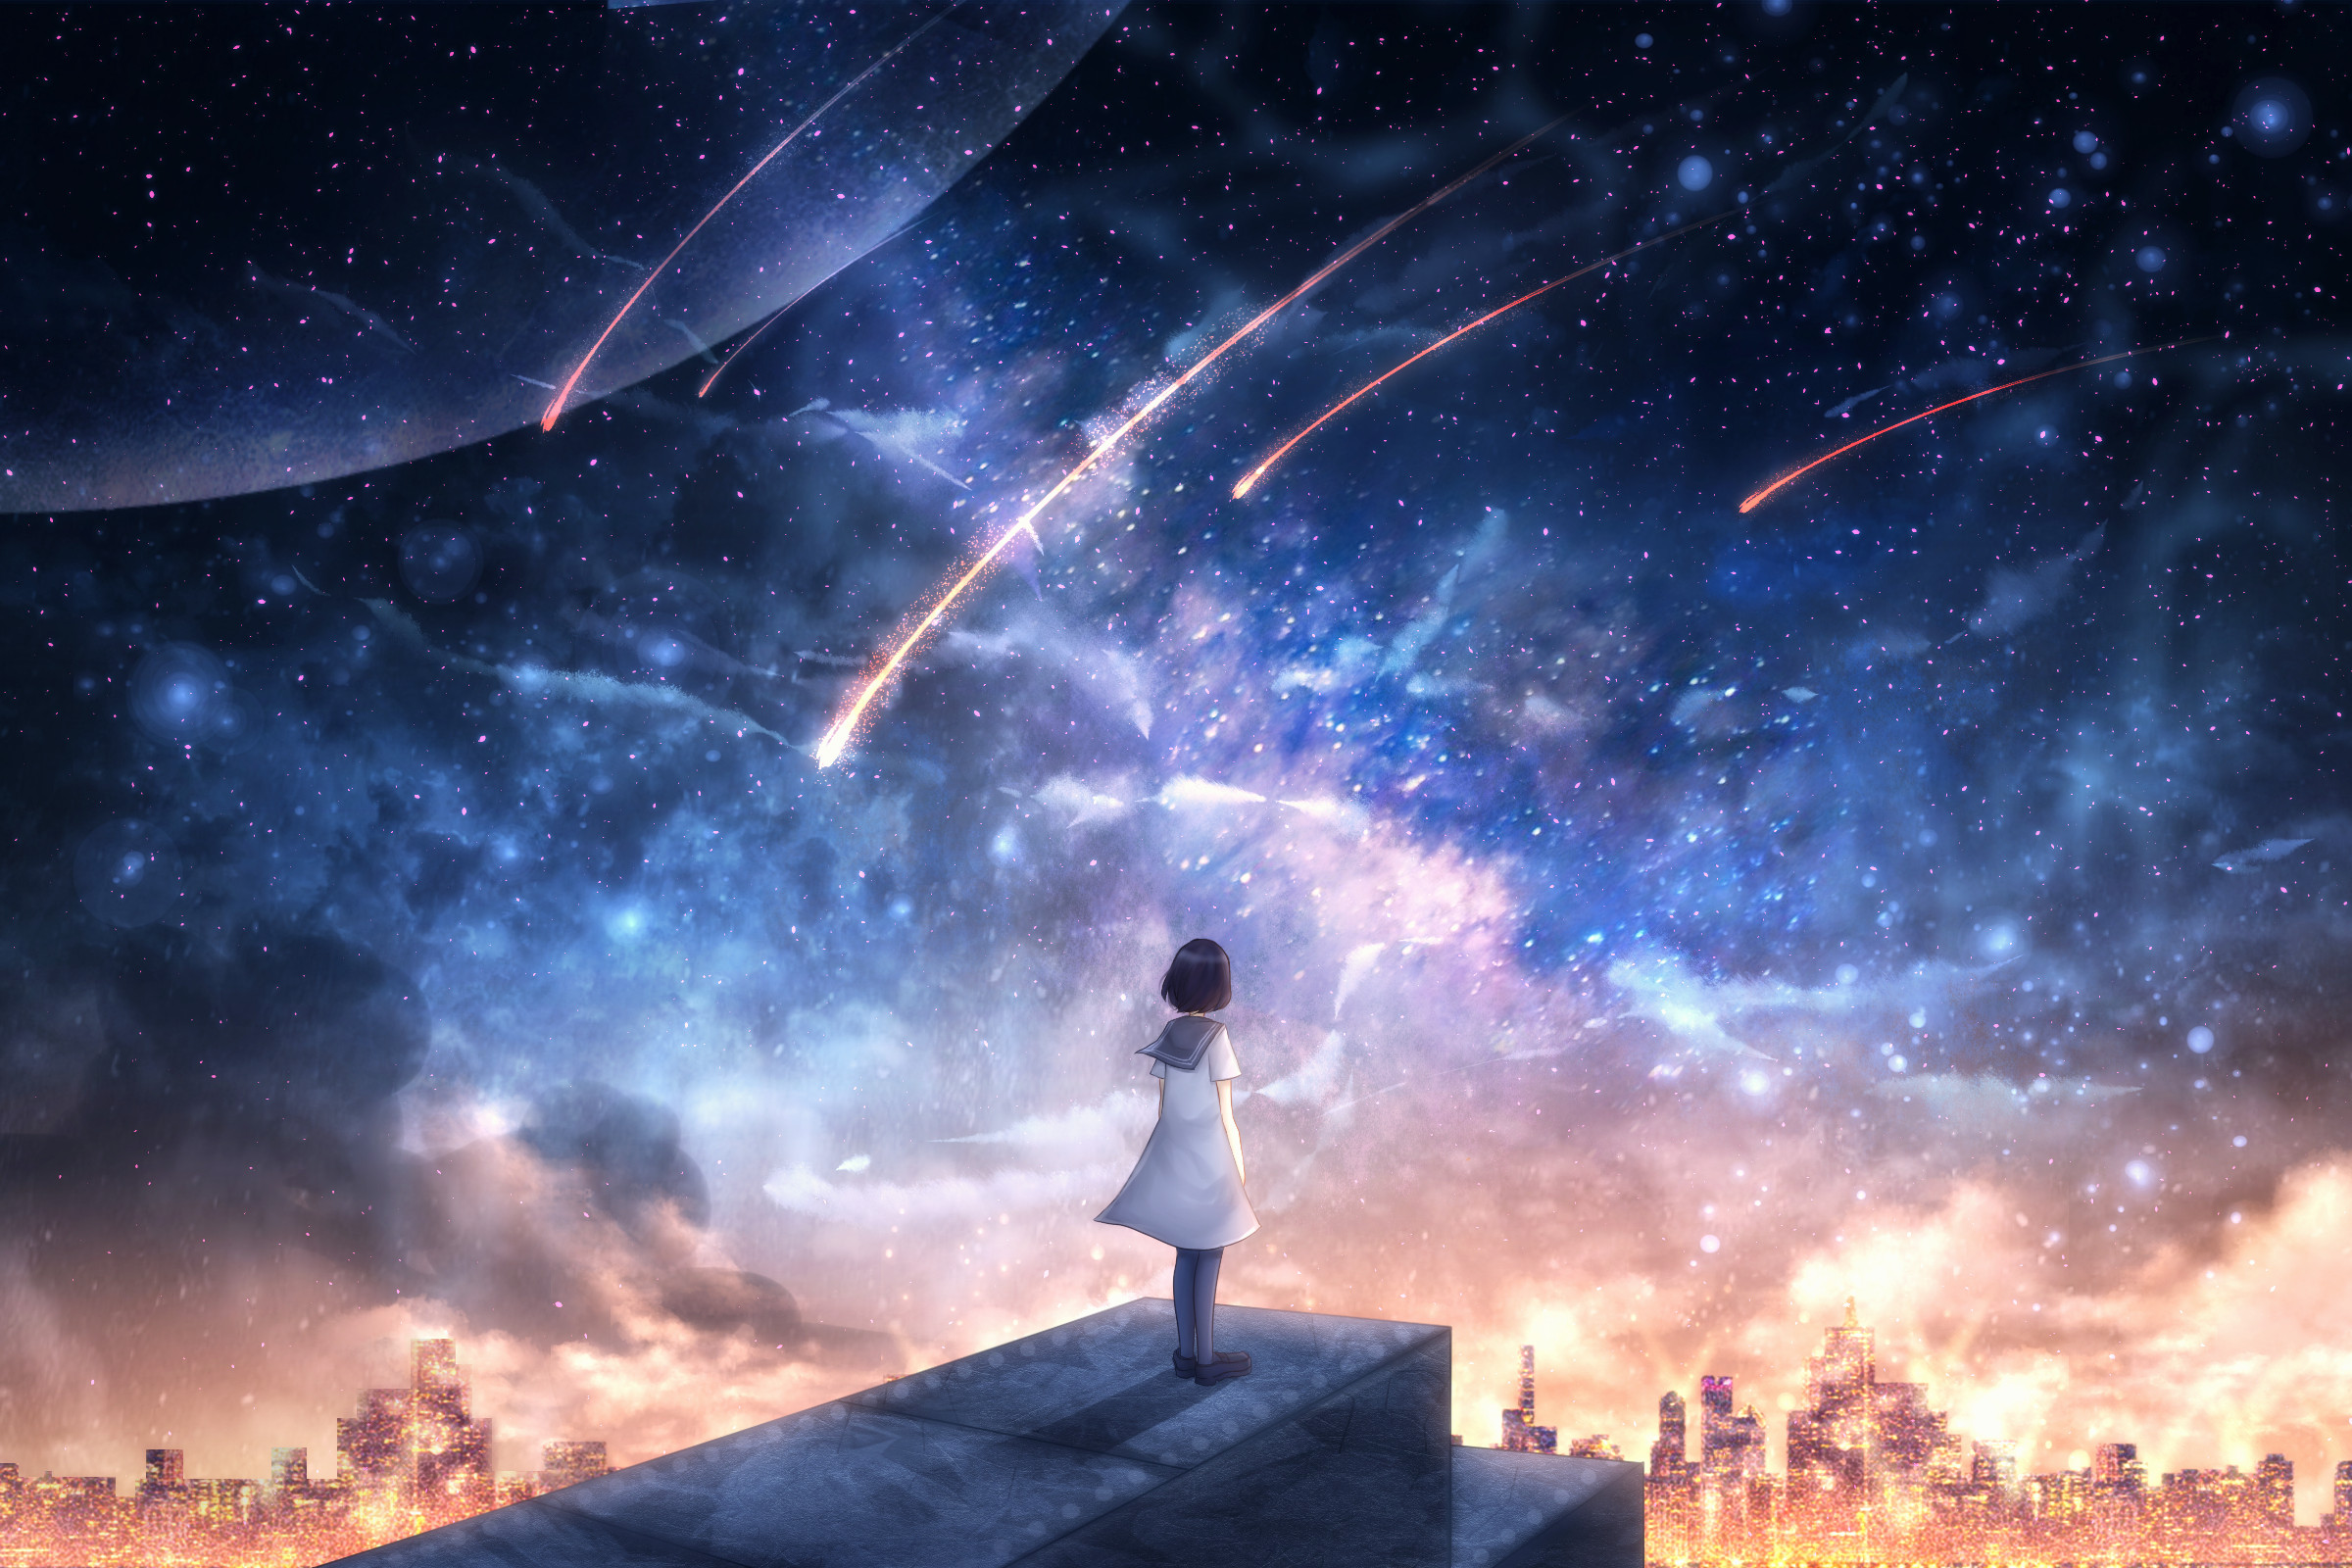 Anime girl Wallpaper 4K, Milky Way, Dream girl